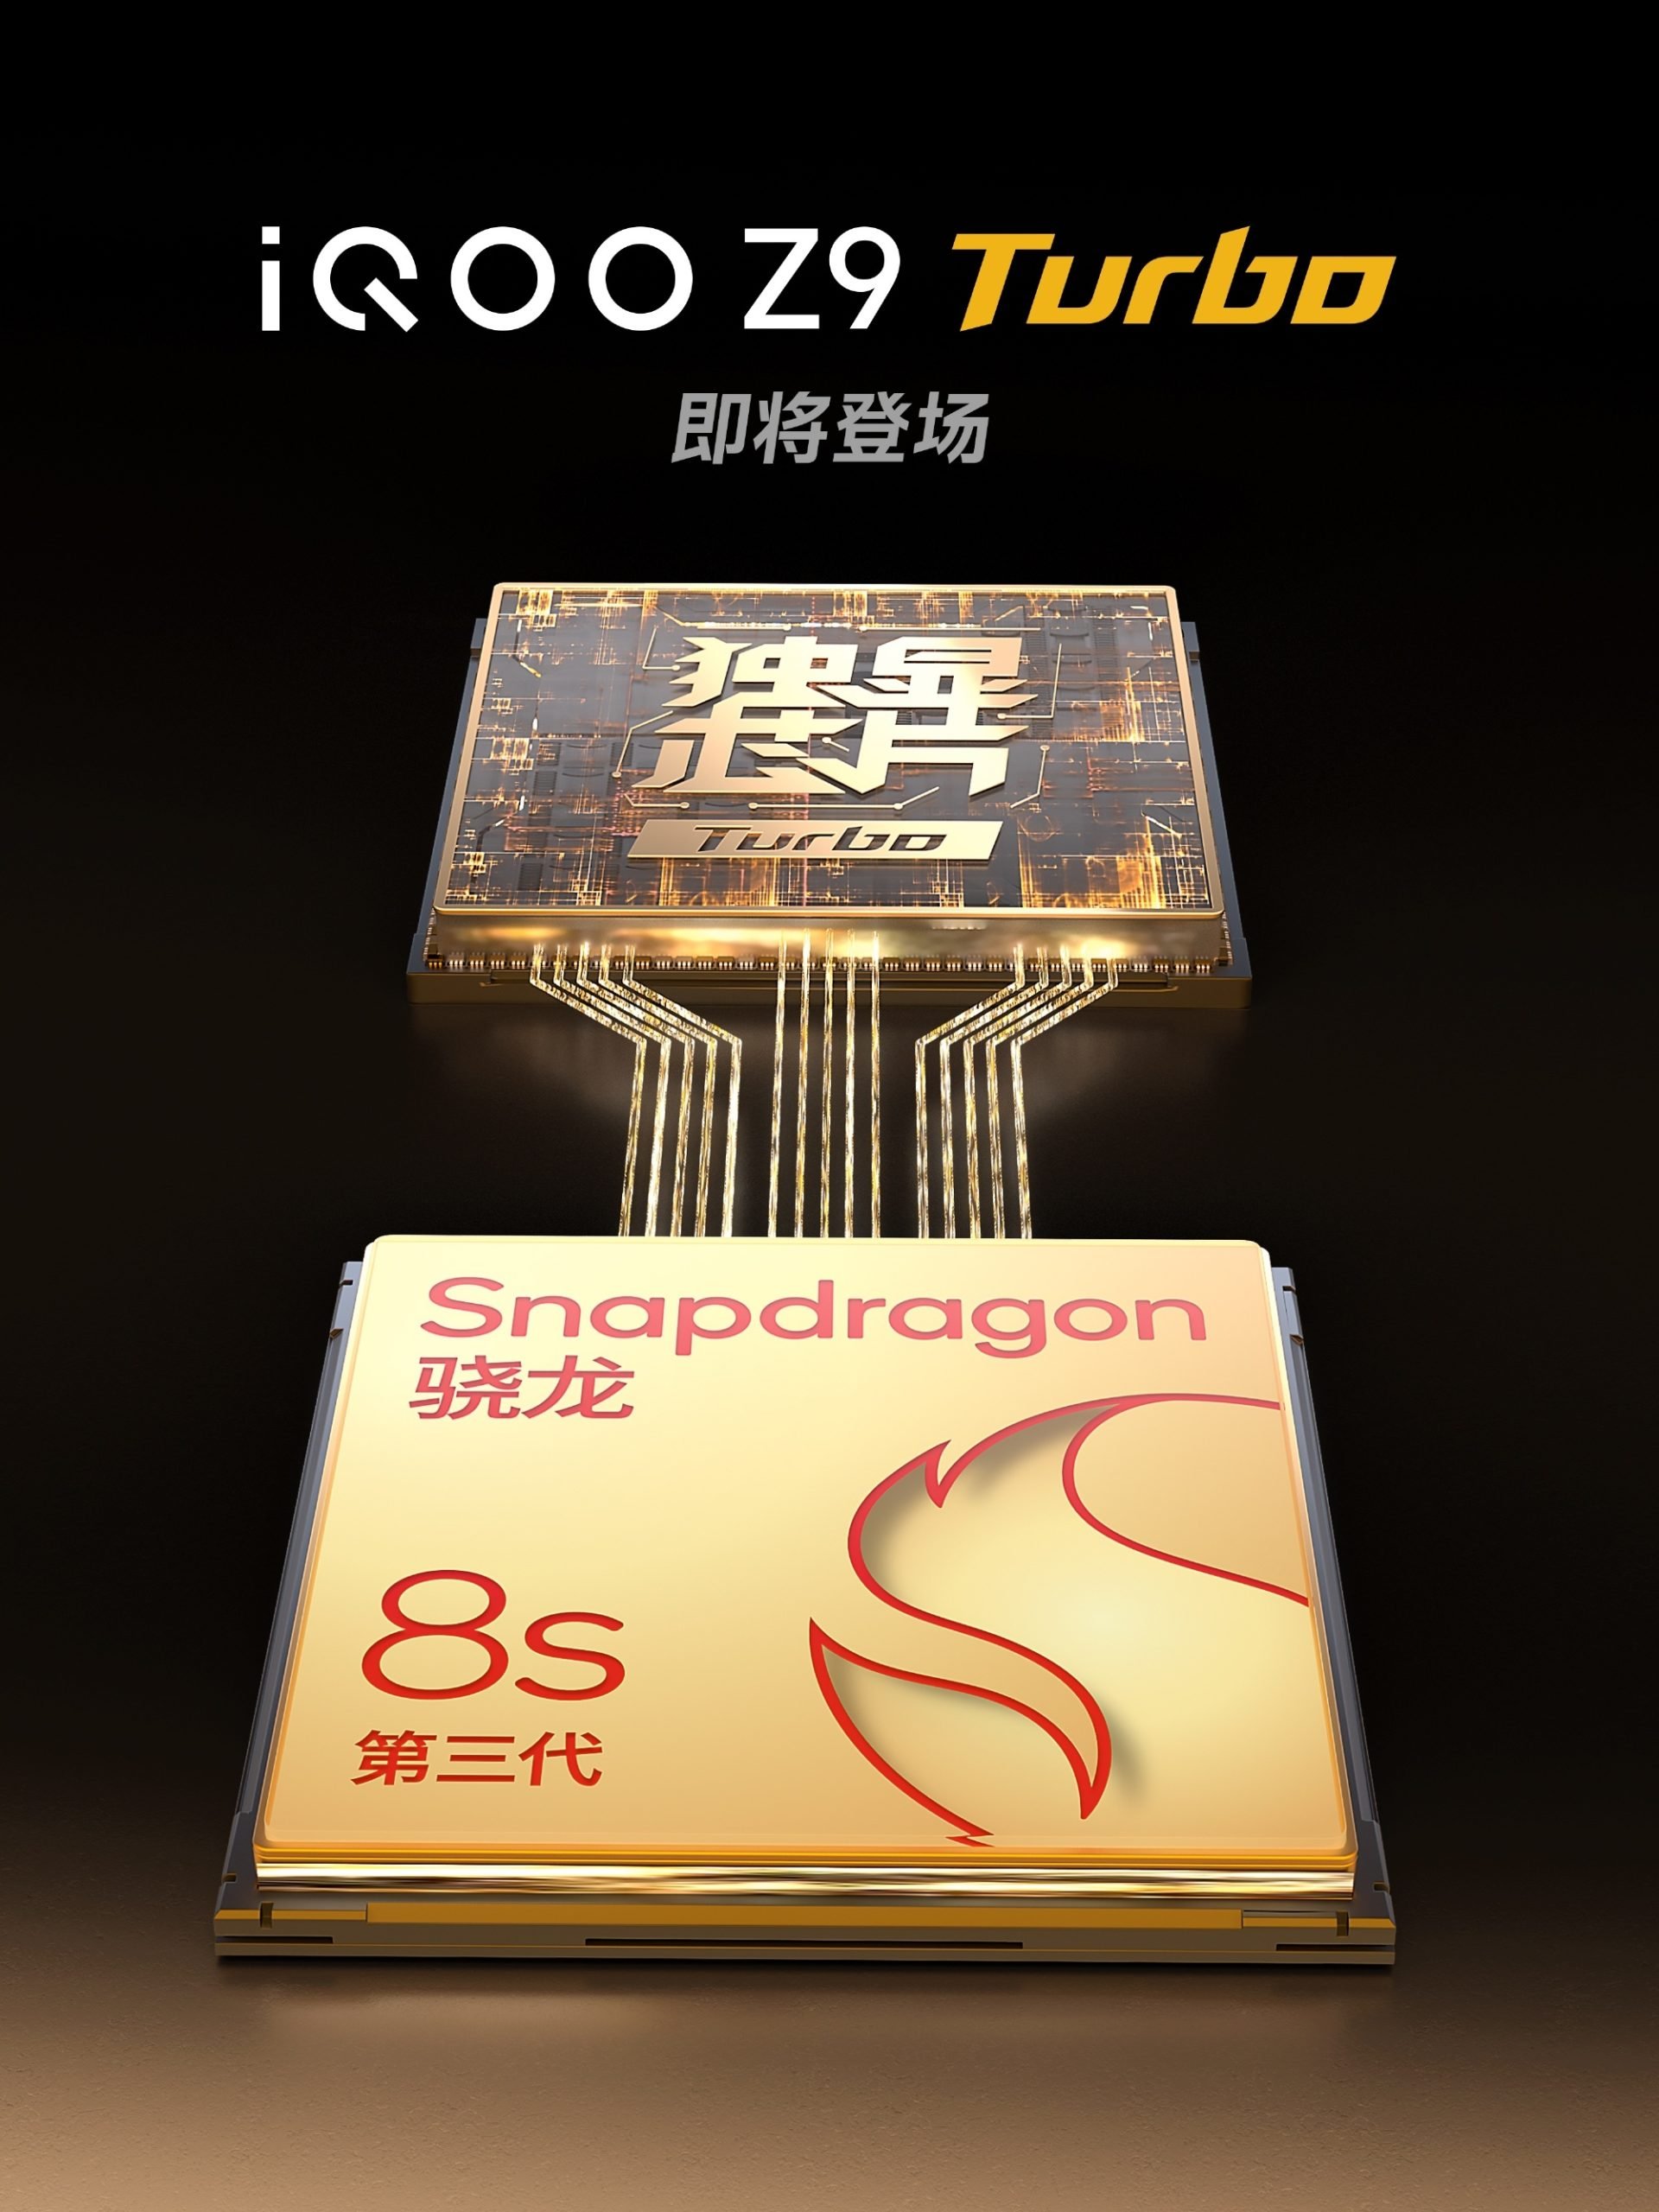 IQOO Z9 Turbo chip